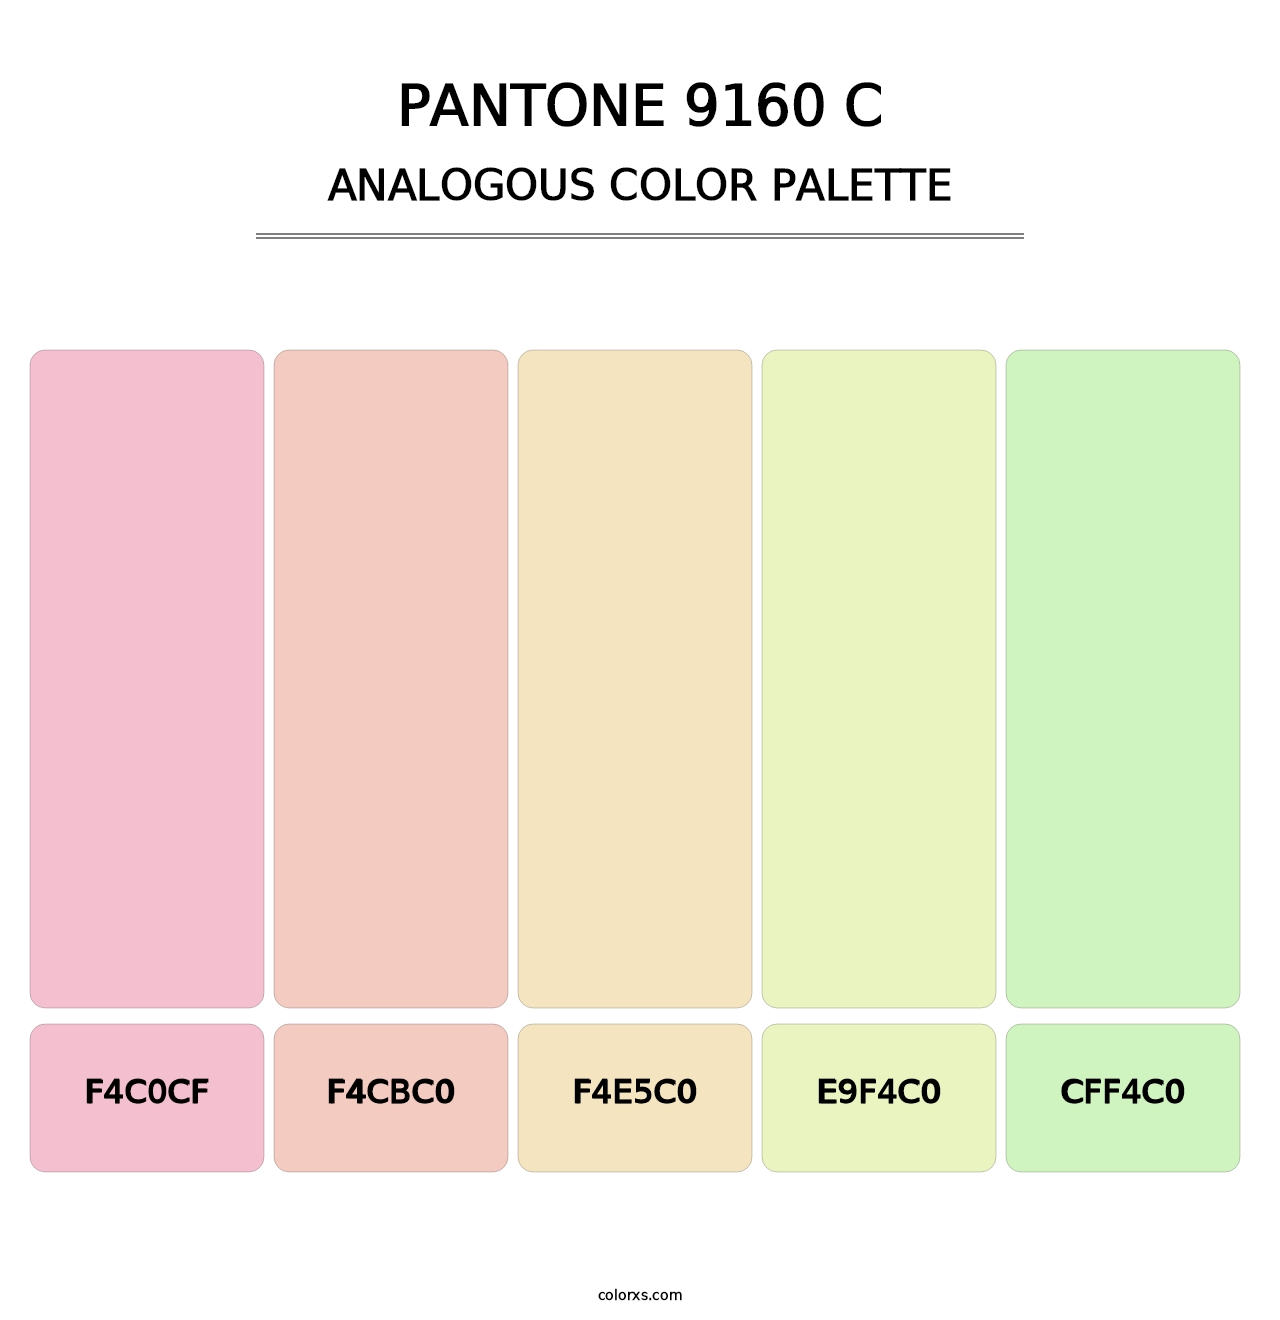 PANTONE 9160 C - Analogous Color Palette